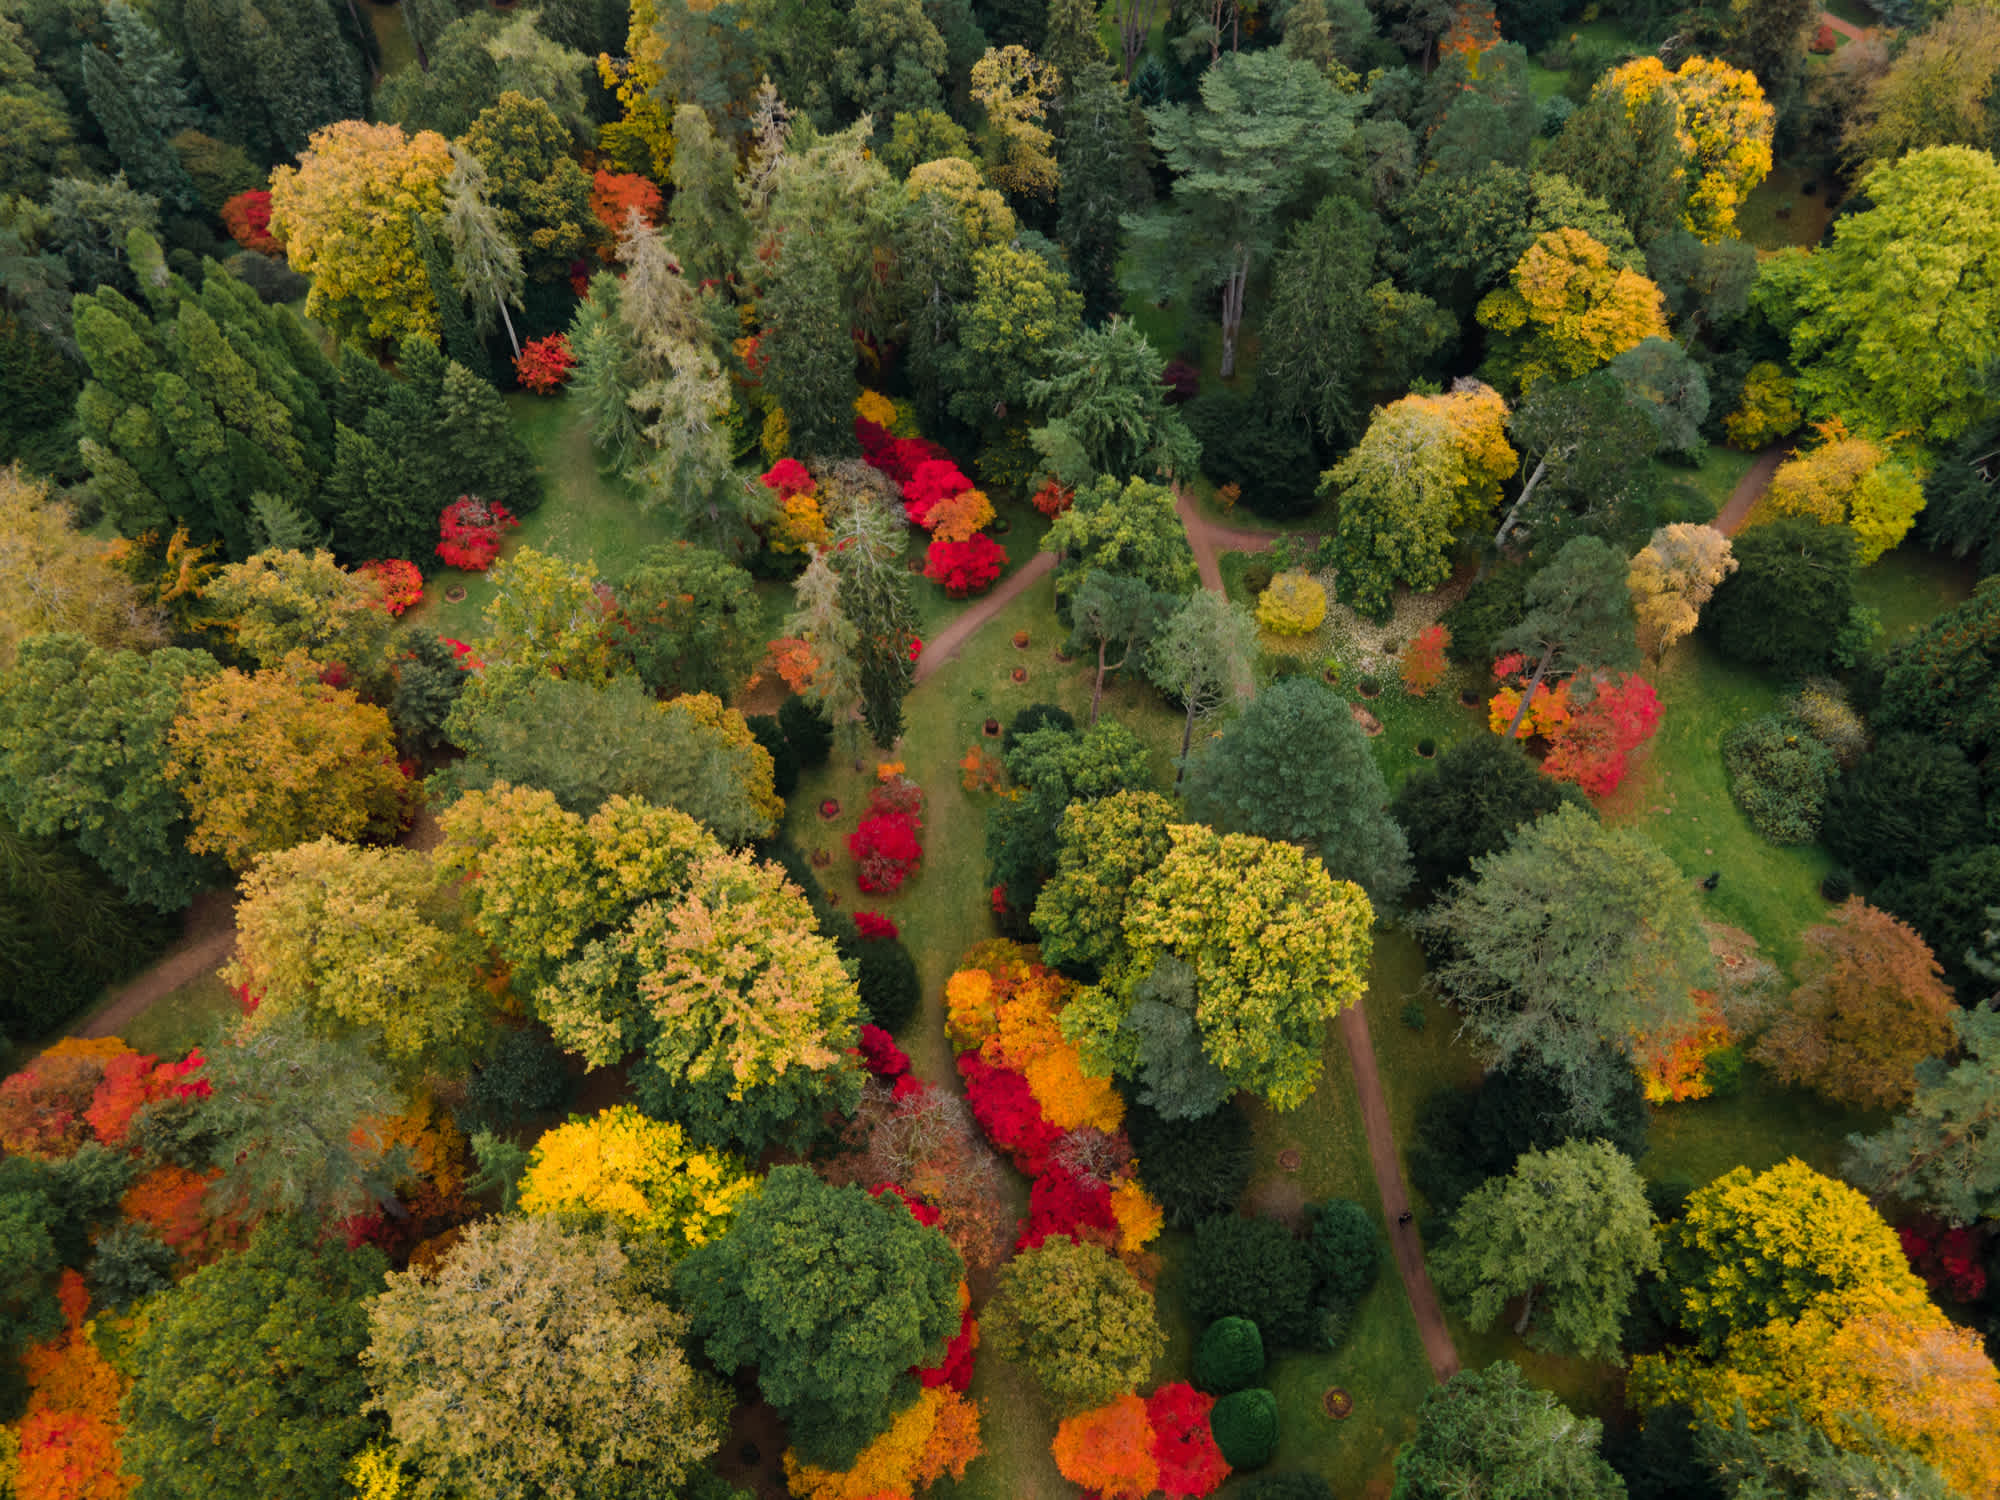 Das Arboretum beherbergt rund 15.000 seltene Baumarten und ist einer der schönsten Baumgärten der Welt